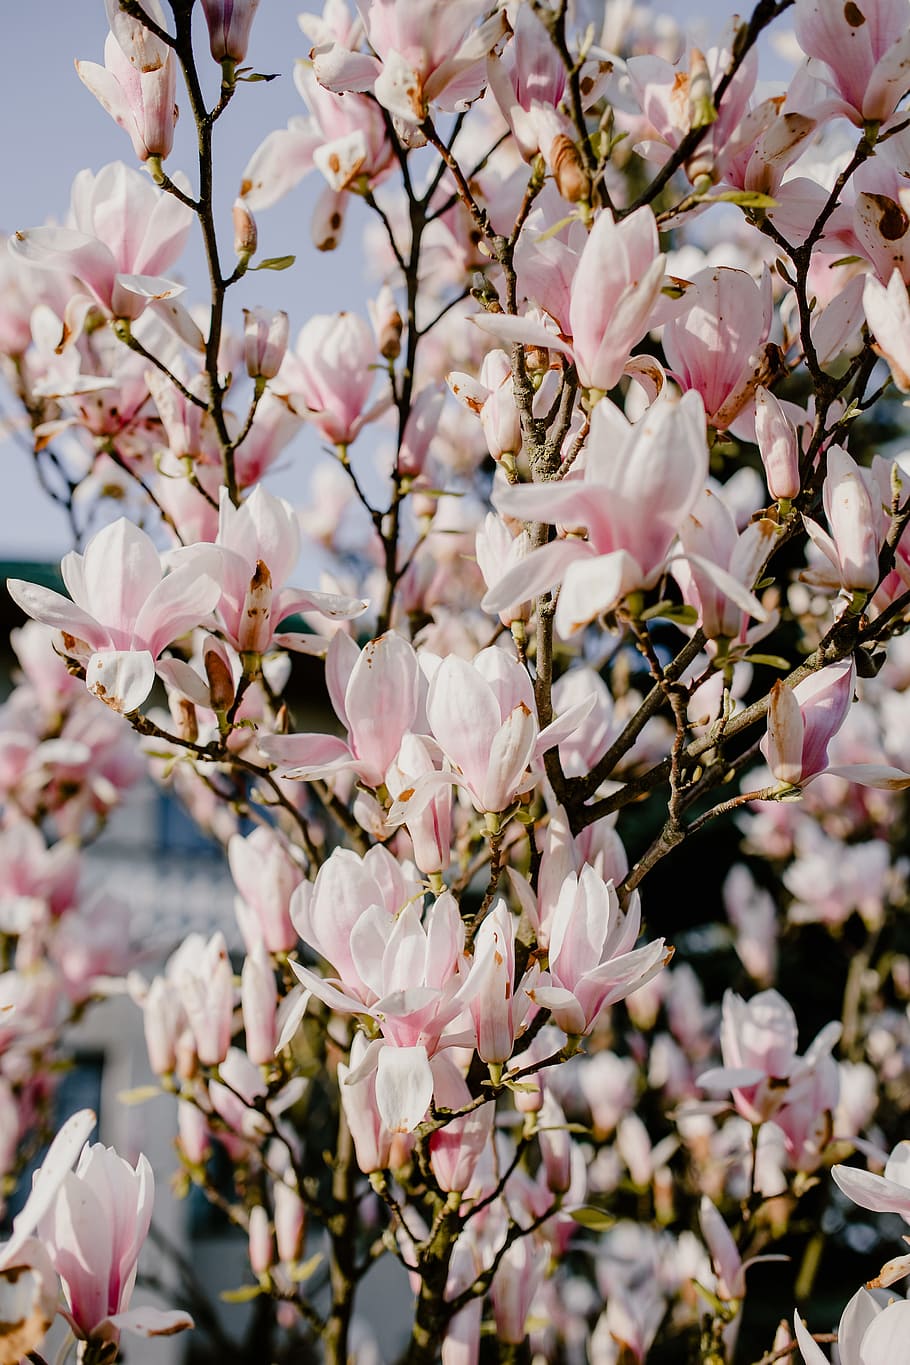 pohon magnolia, mekar, bunga, taman, indah, pink, musim semi, april, botani, magnolia